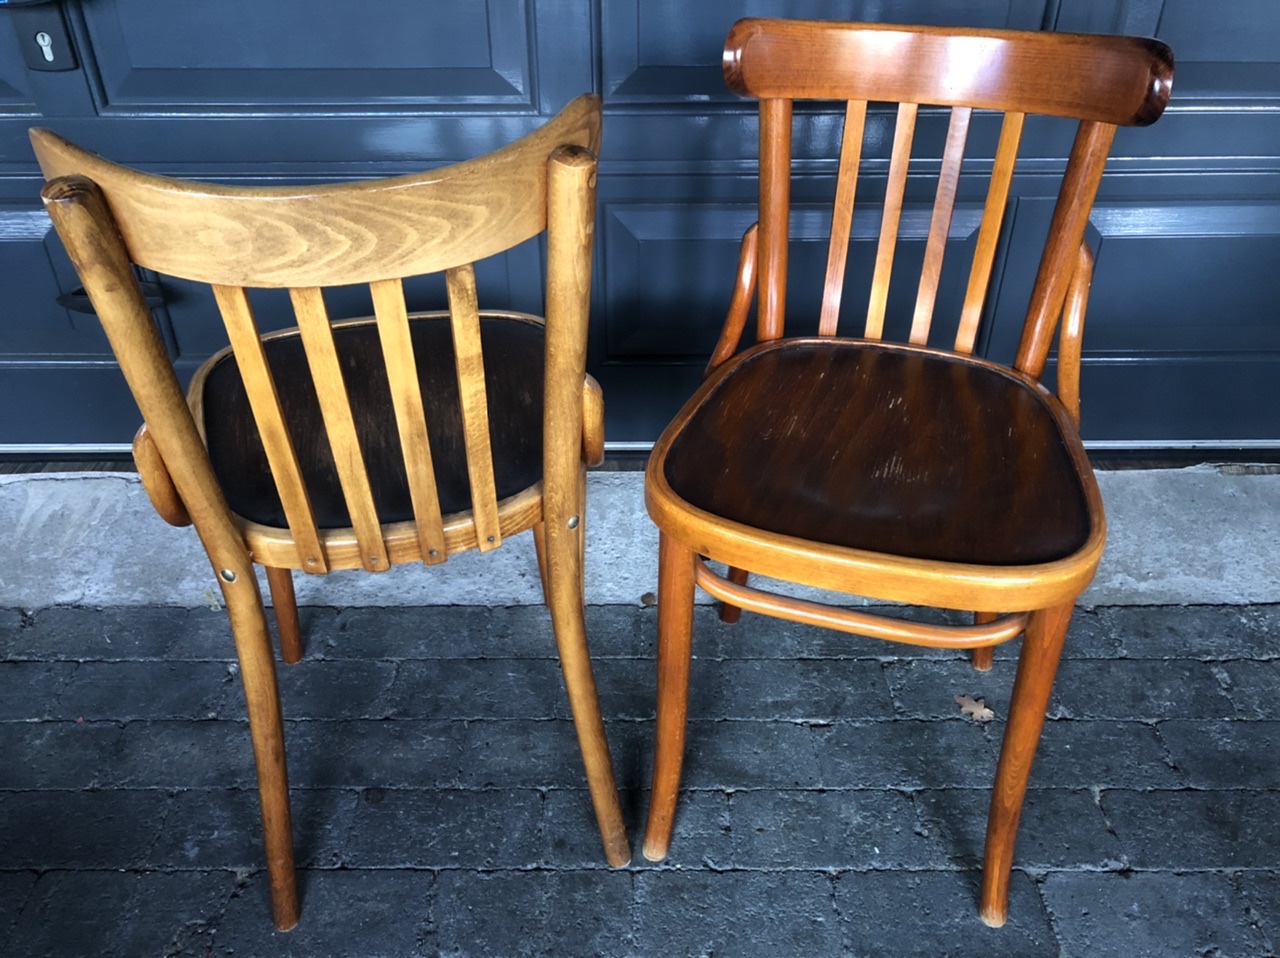 Grand cafe bistro stoelen used gebruikt gratis is goedkoper amsterdam kroeg de parel meubilair